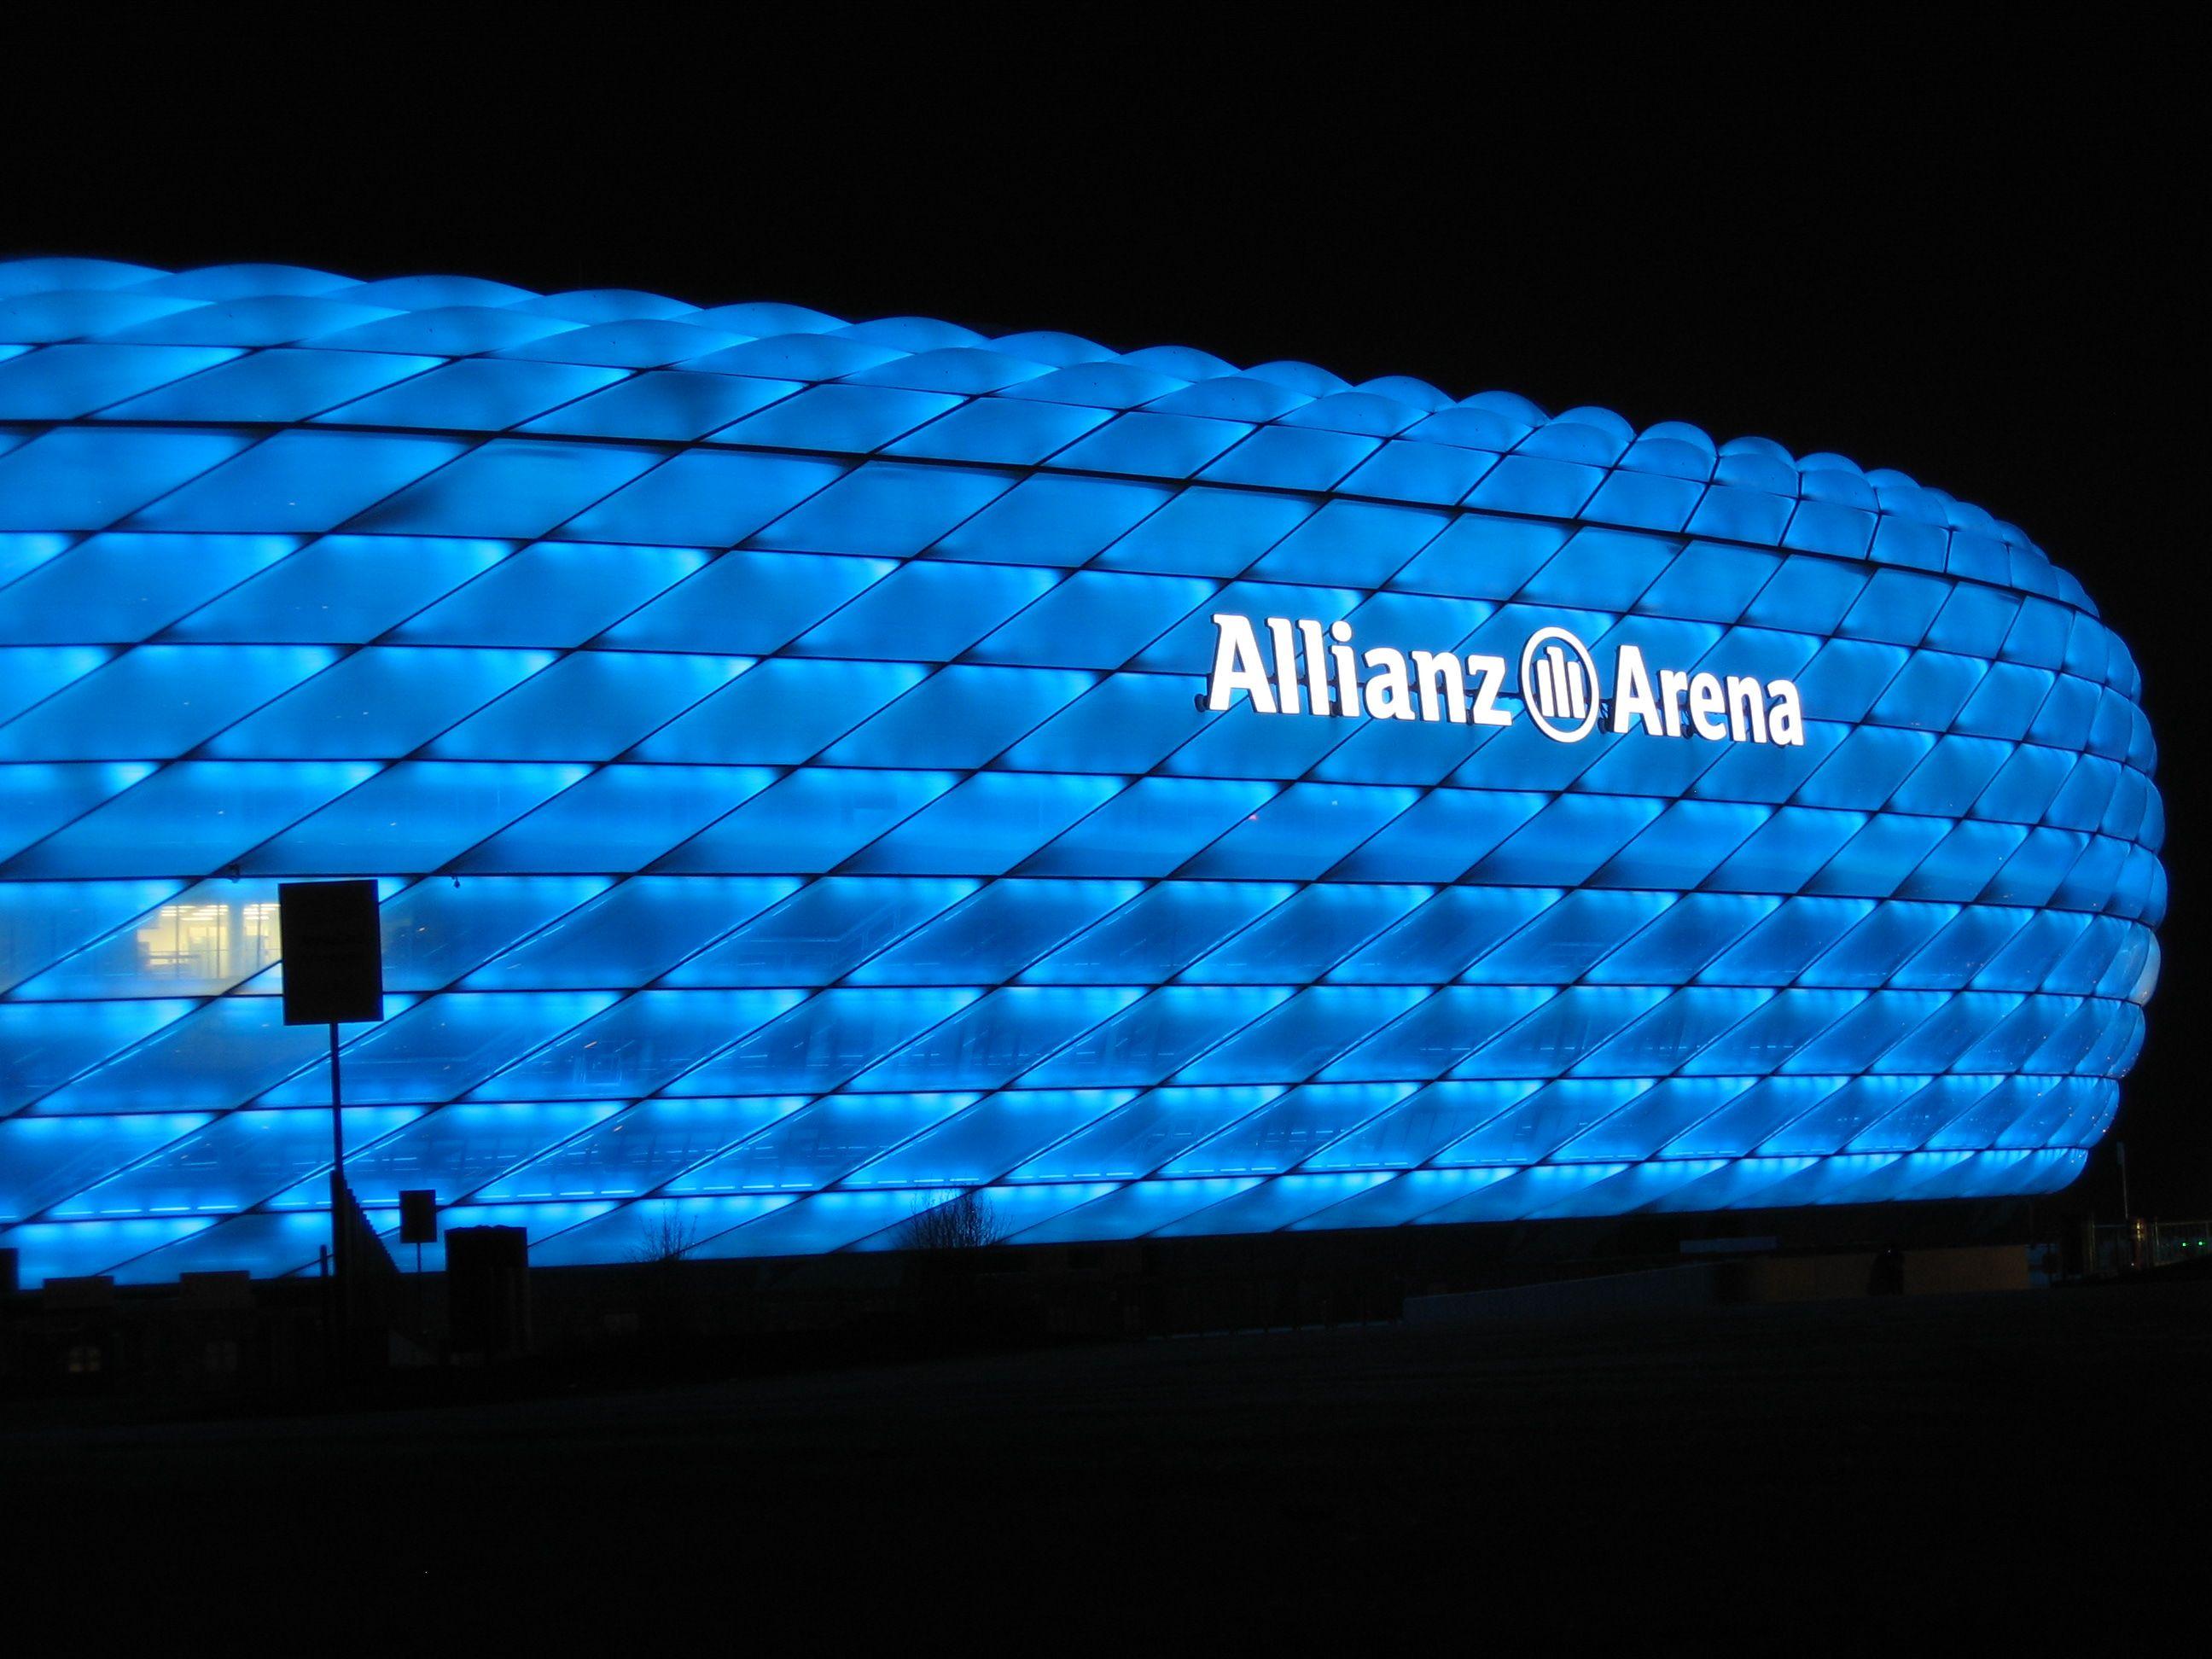 2592x1944px Allianz (948.98 KB).04.2015